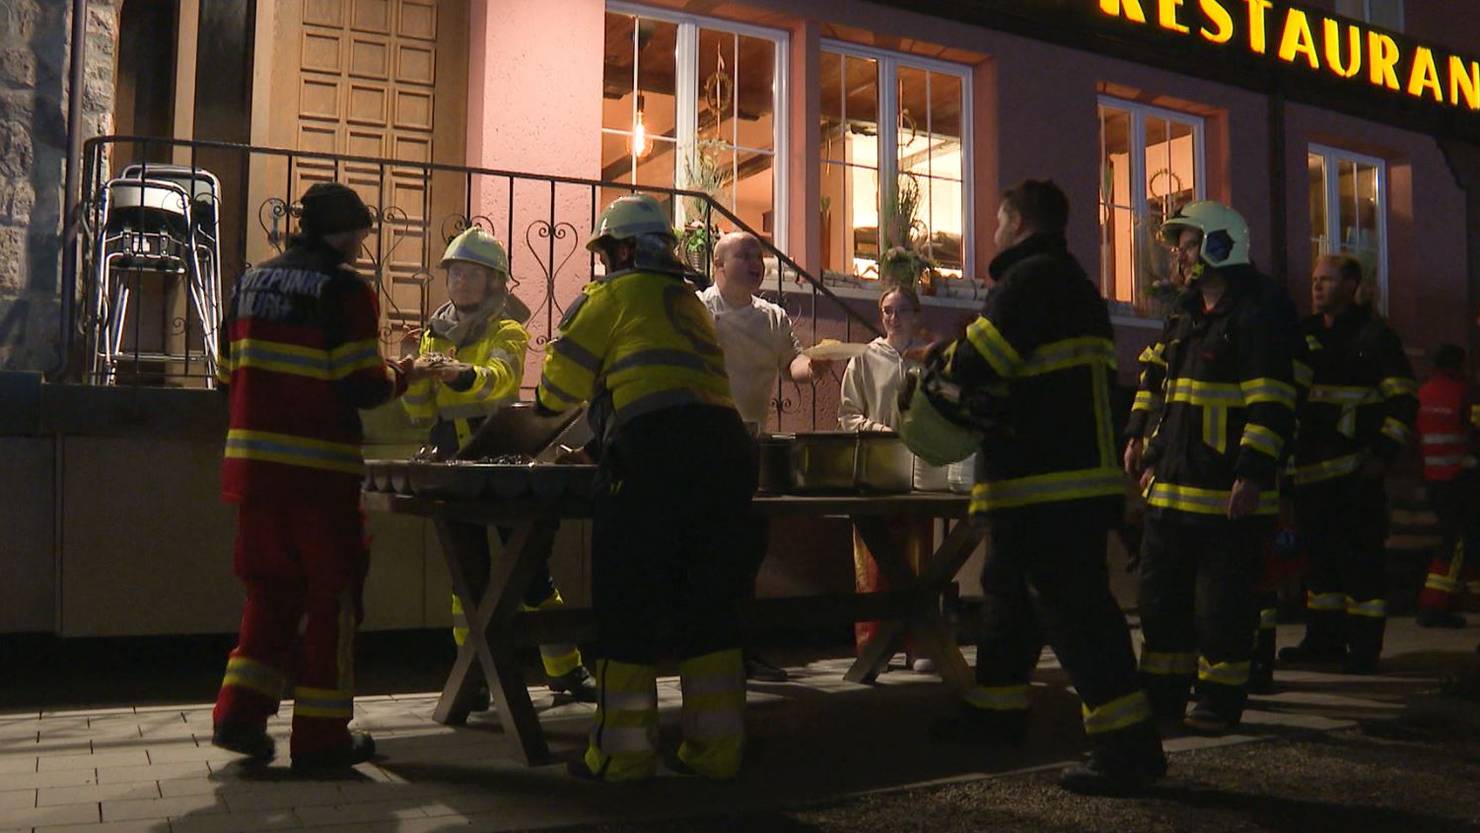 Nach Brand in Merenschwand: Restaurant bietet Obdach für Bewohner und Essen für Feuerwehr | ArgoviaToday